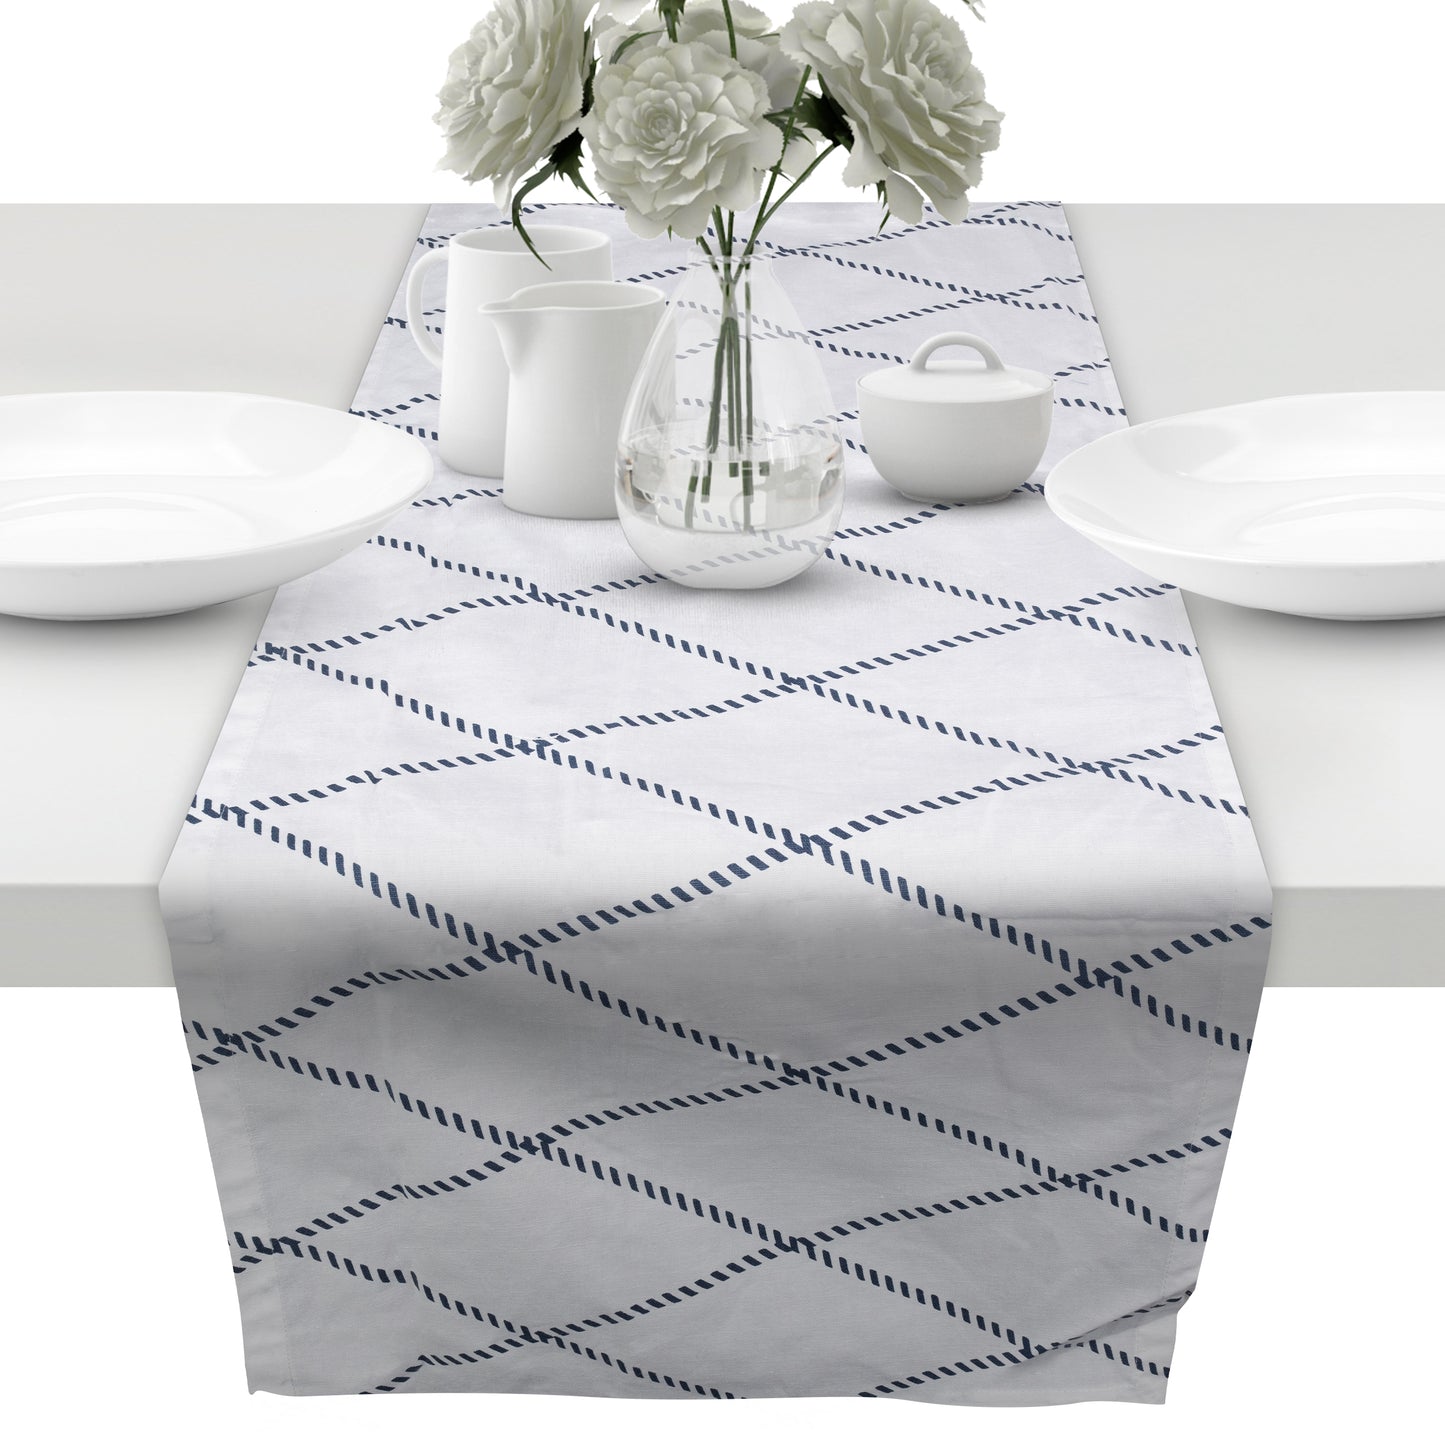 Kopie von unendlich schoen - Tischläufer aus 100% Baumwolle in Bester Qualität, Tischdecke für Esstisch Wohnzimmer (weißblau Raute, 43 x 160 cm)